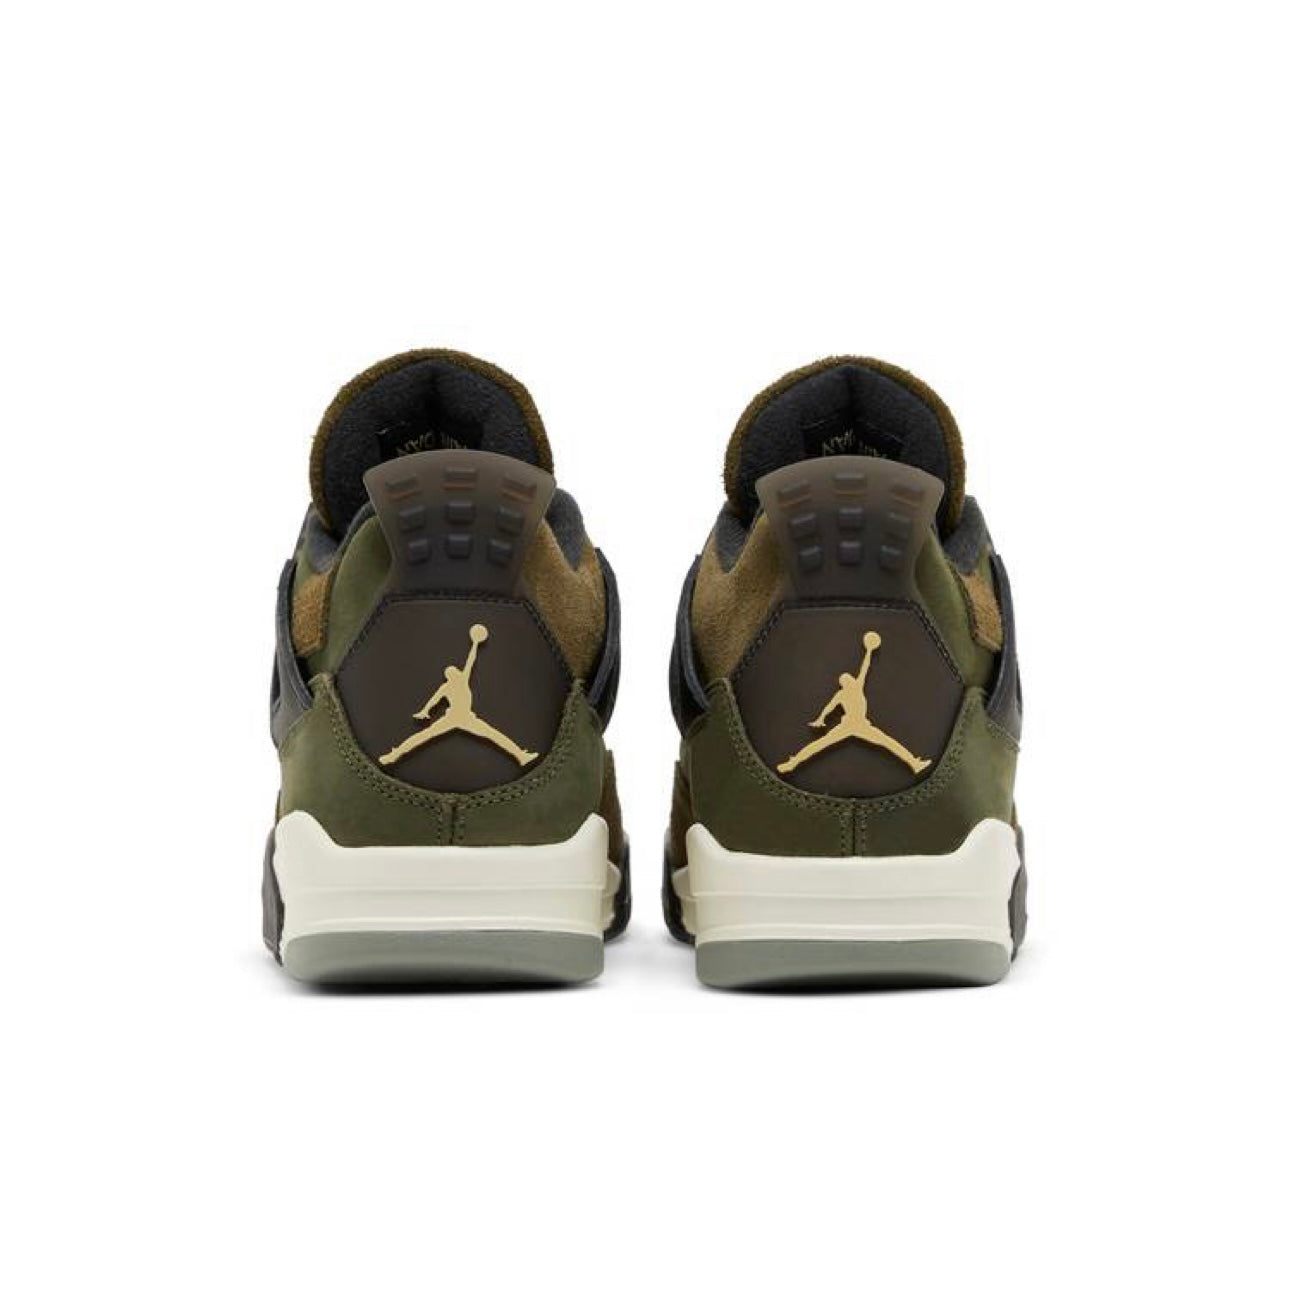 Air Jordan 4 Retro SE ‘Craft Olive’ (Men’s)